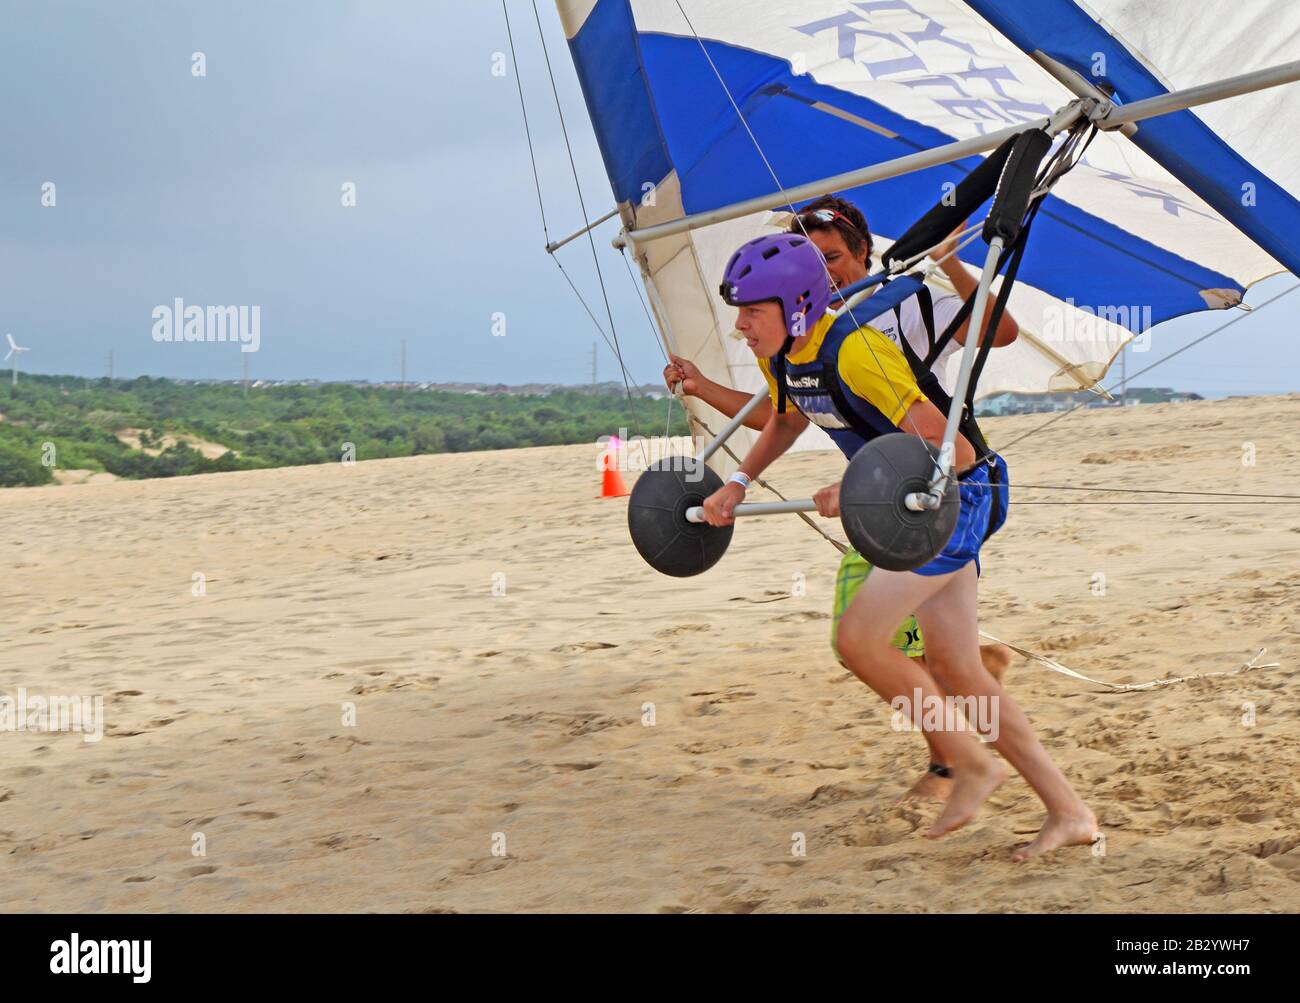 L'étudiant se prépare au décollage avec un instructeur de l'école Kitty Hawk Kites Hang Gliding sur les dunes de sable Banque D'Images